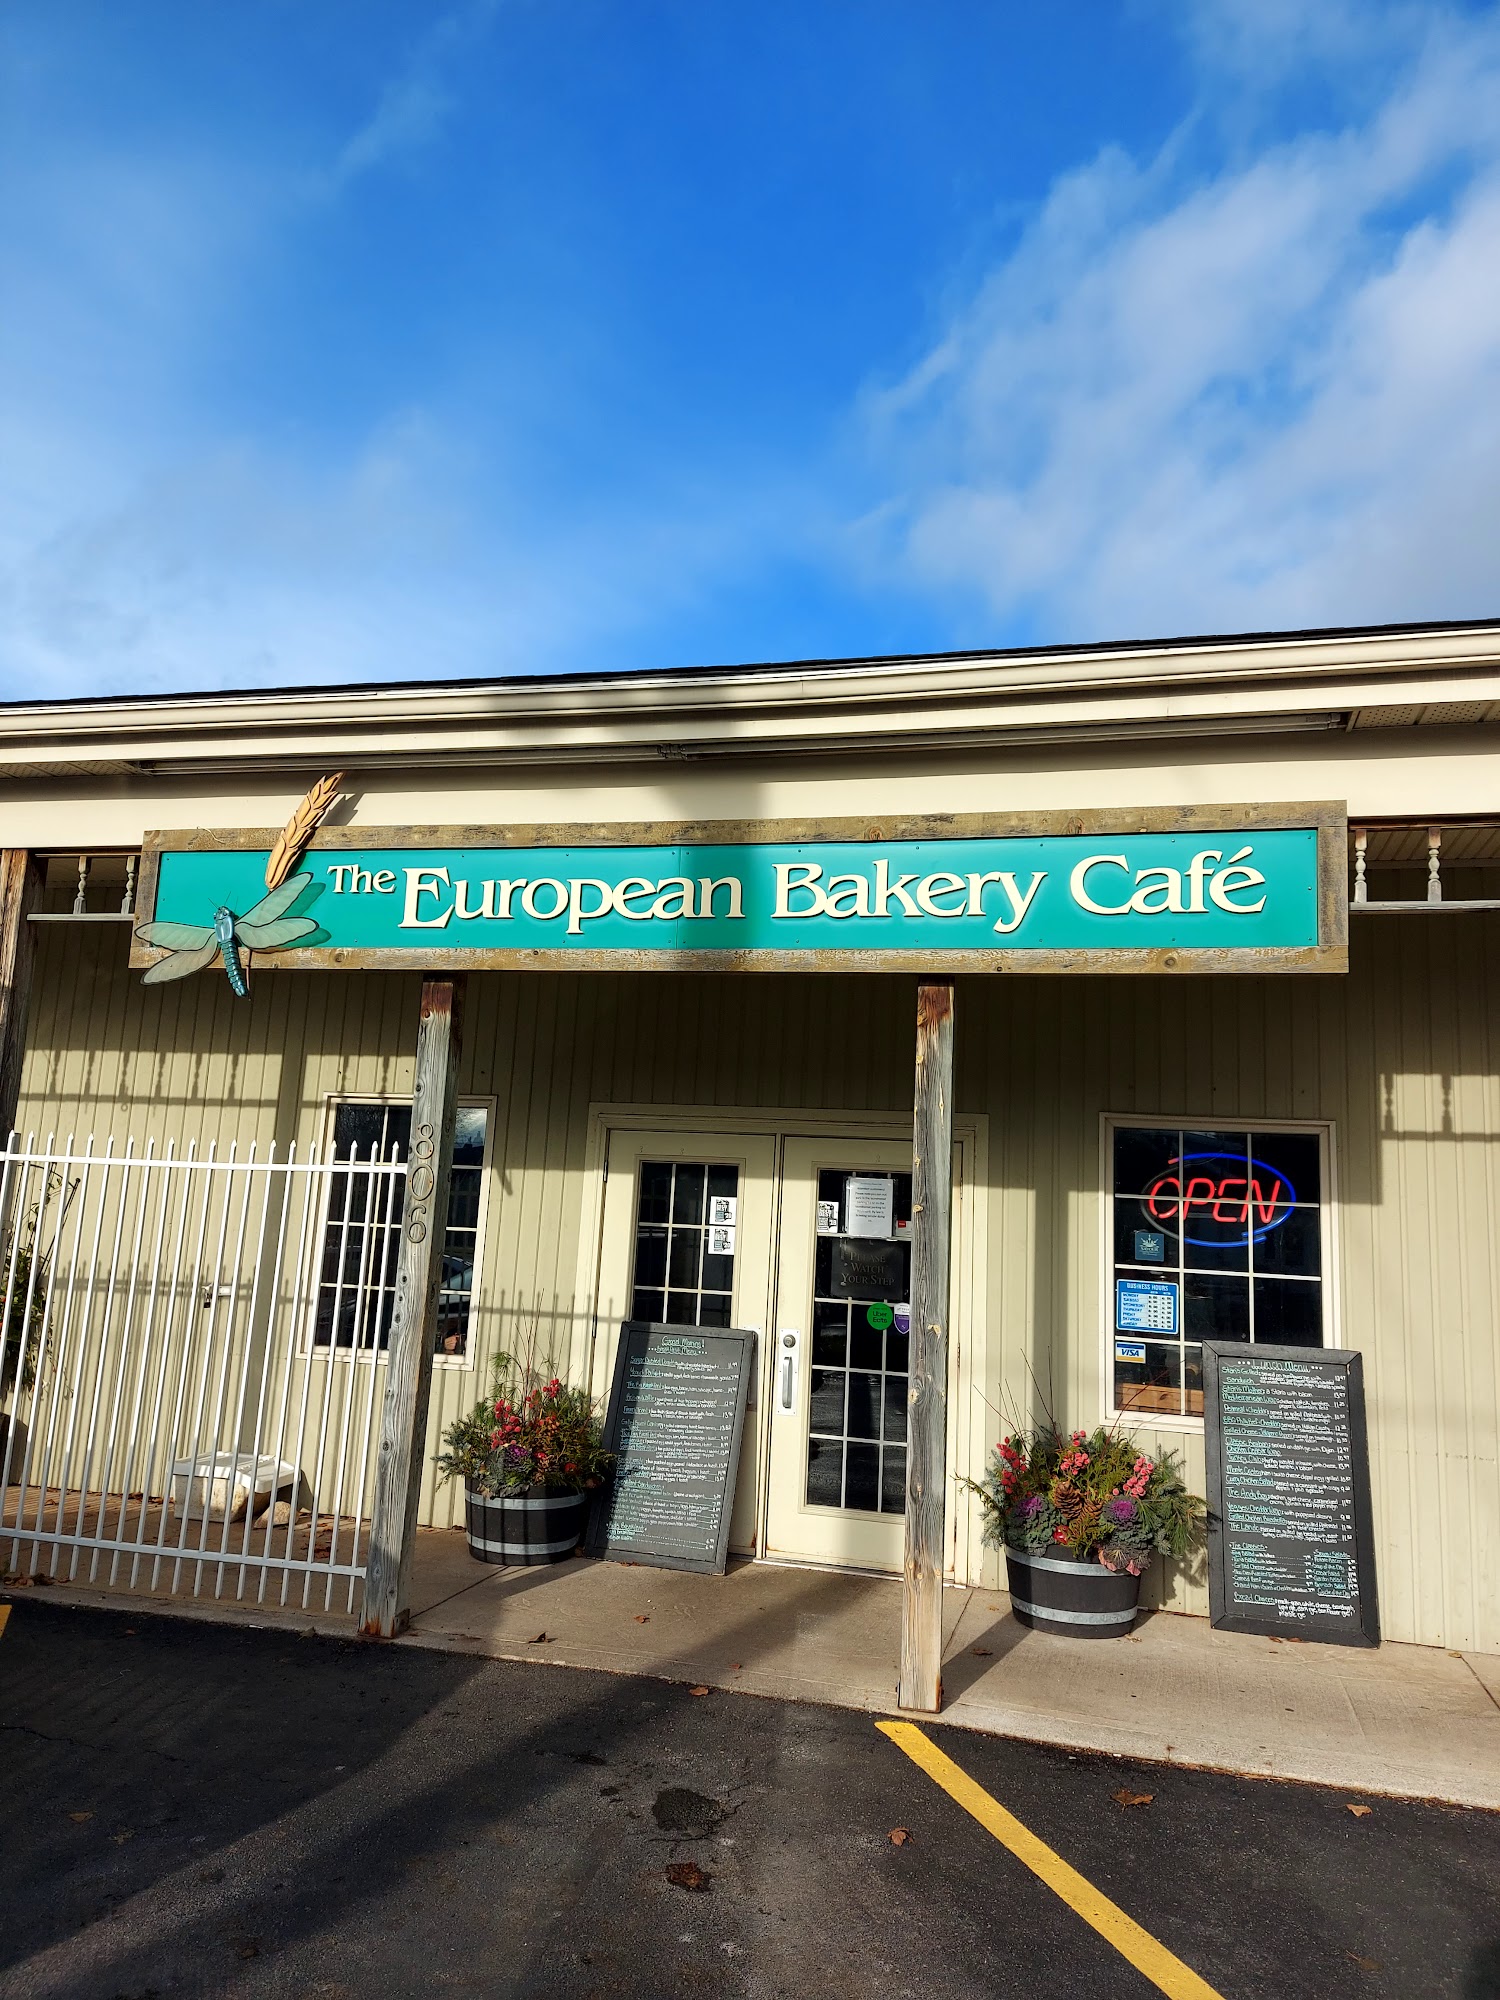 The European Bakery Café